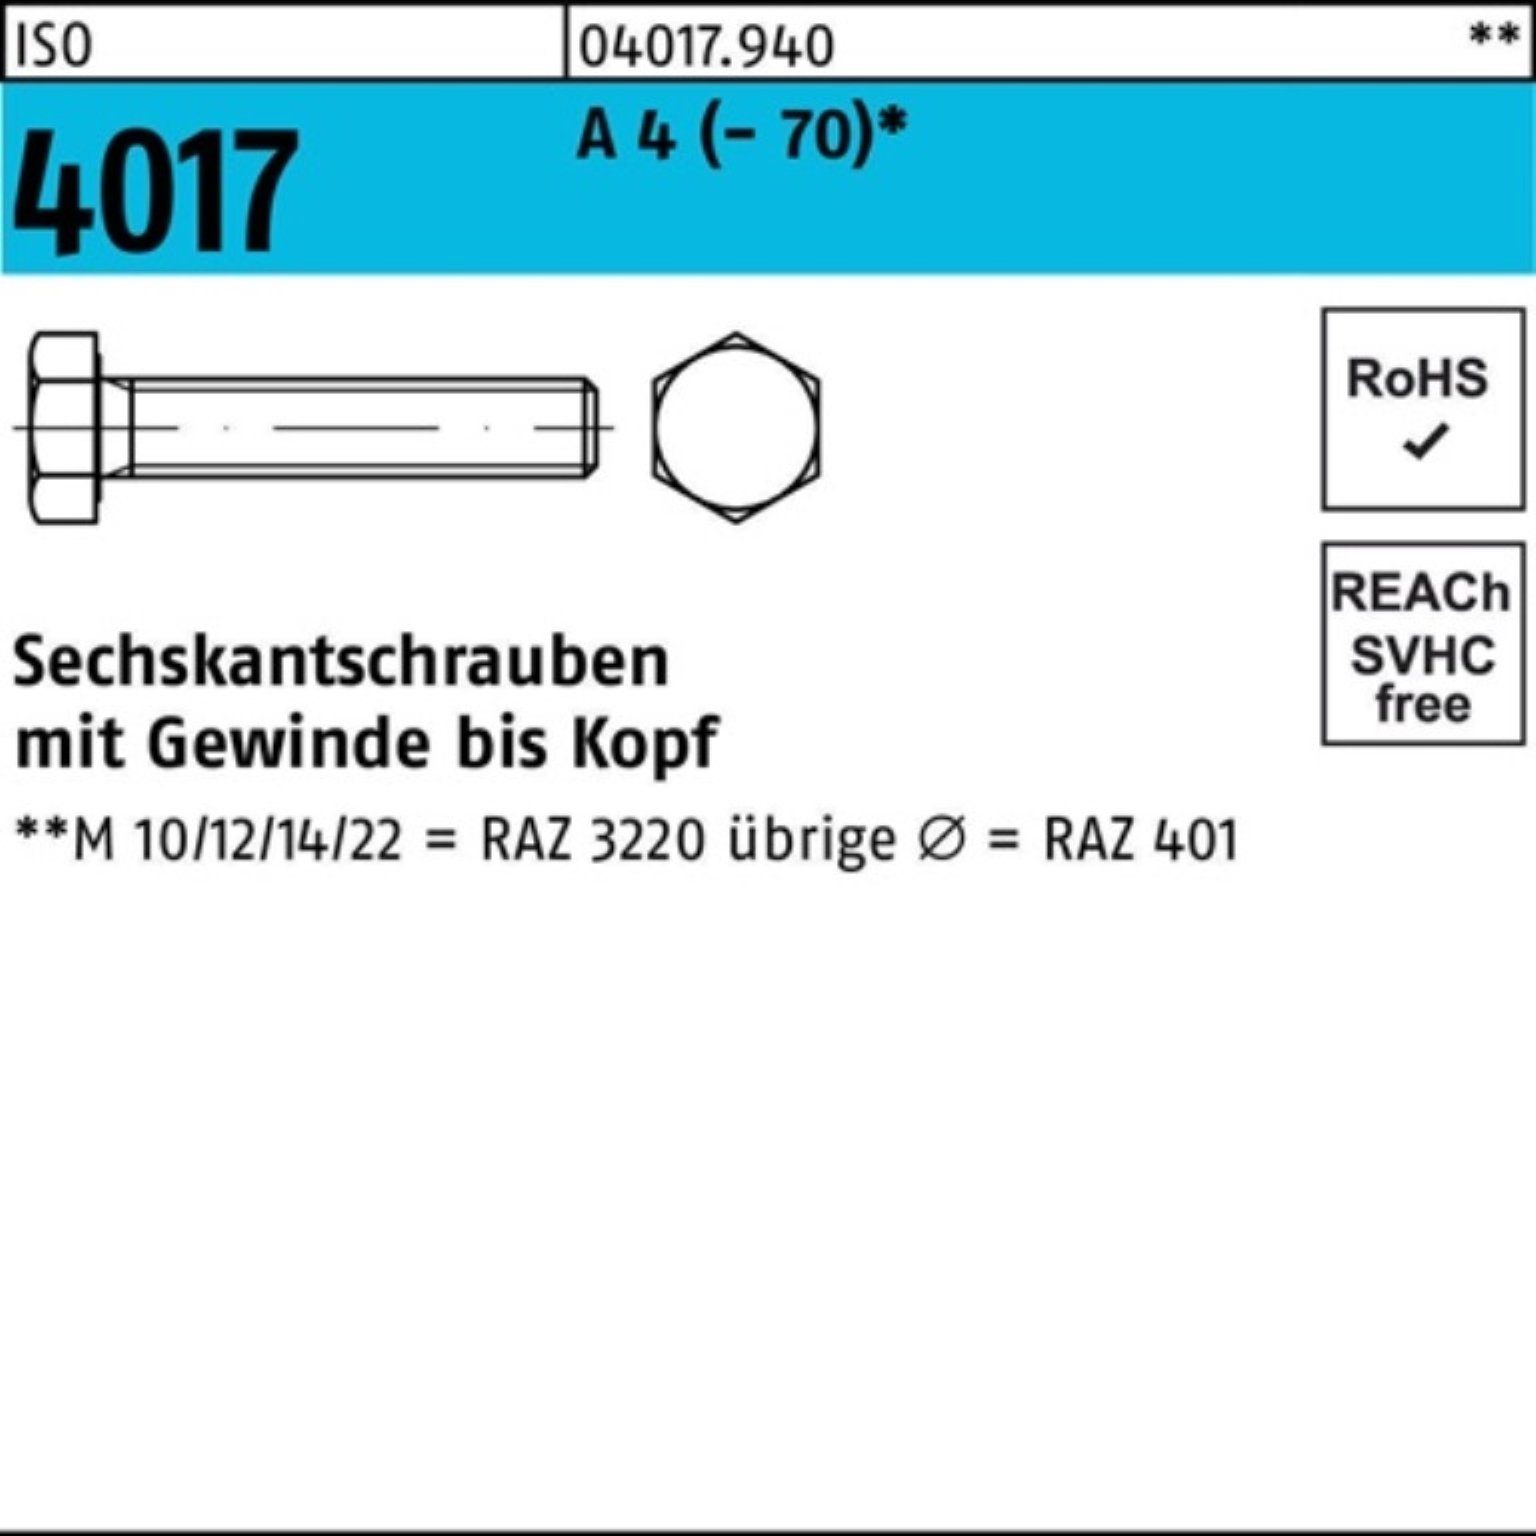 Bufab Sechskantschraube 100er Pack Sechskantschraube ISO 4017 VG M24x 70 A 4 (70) 1 Stück I